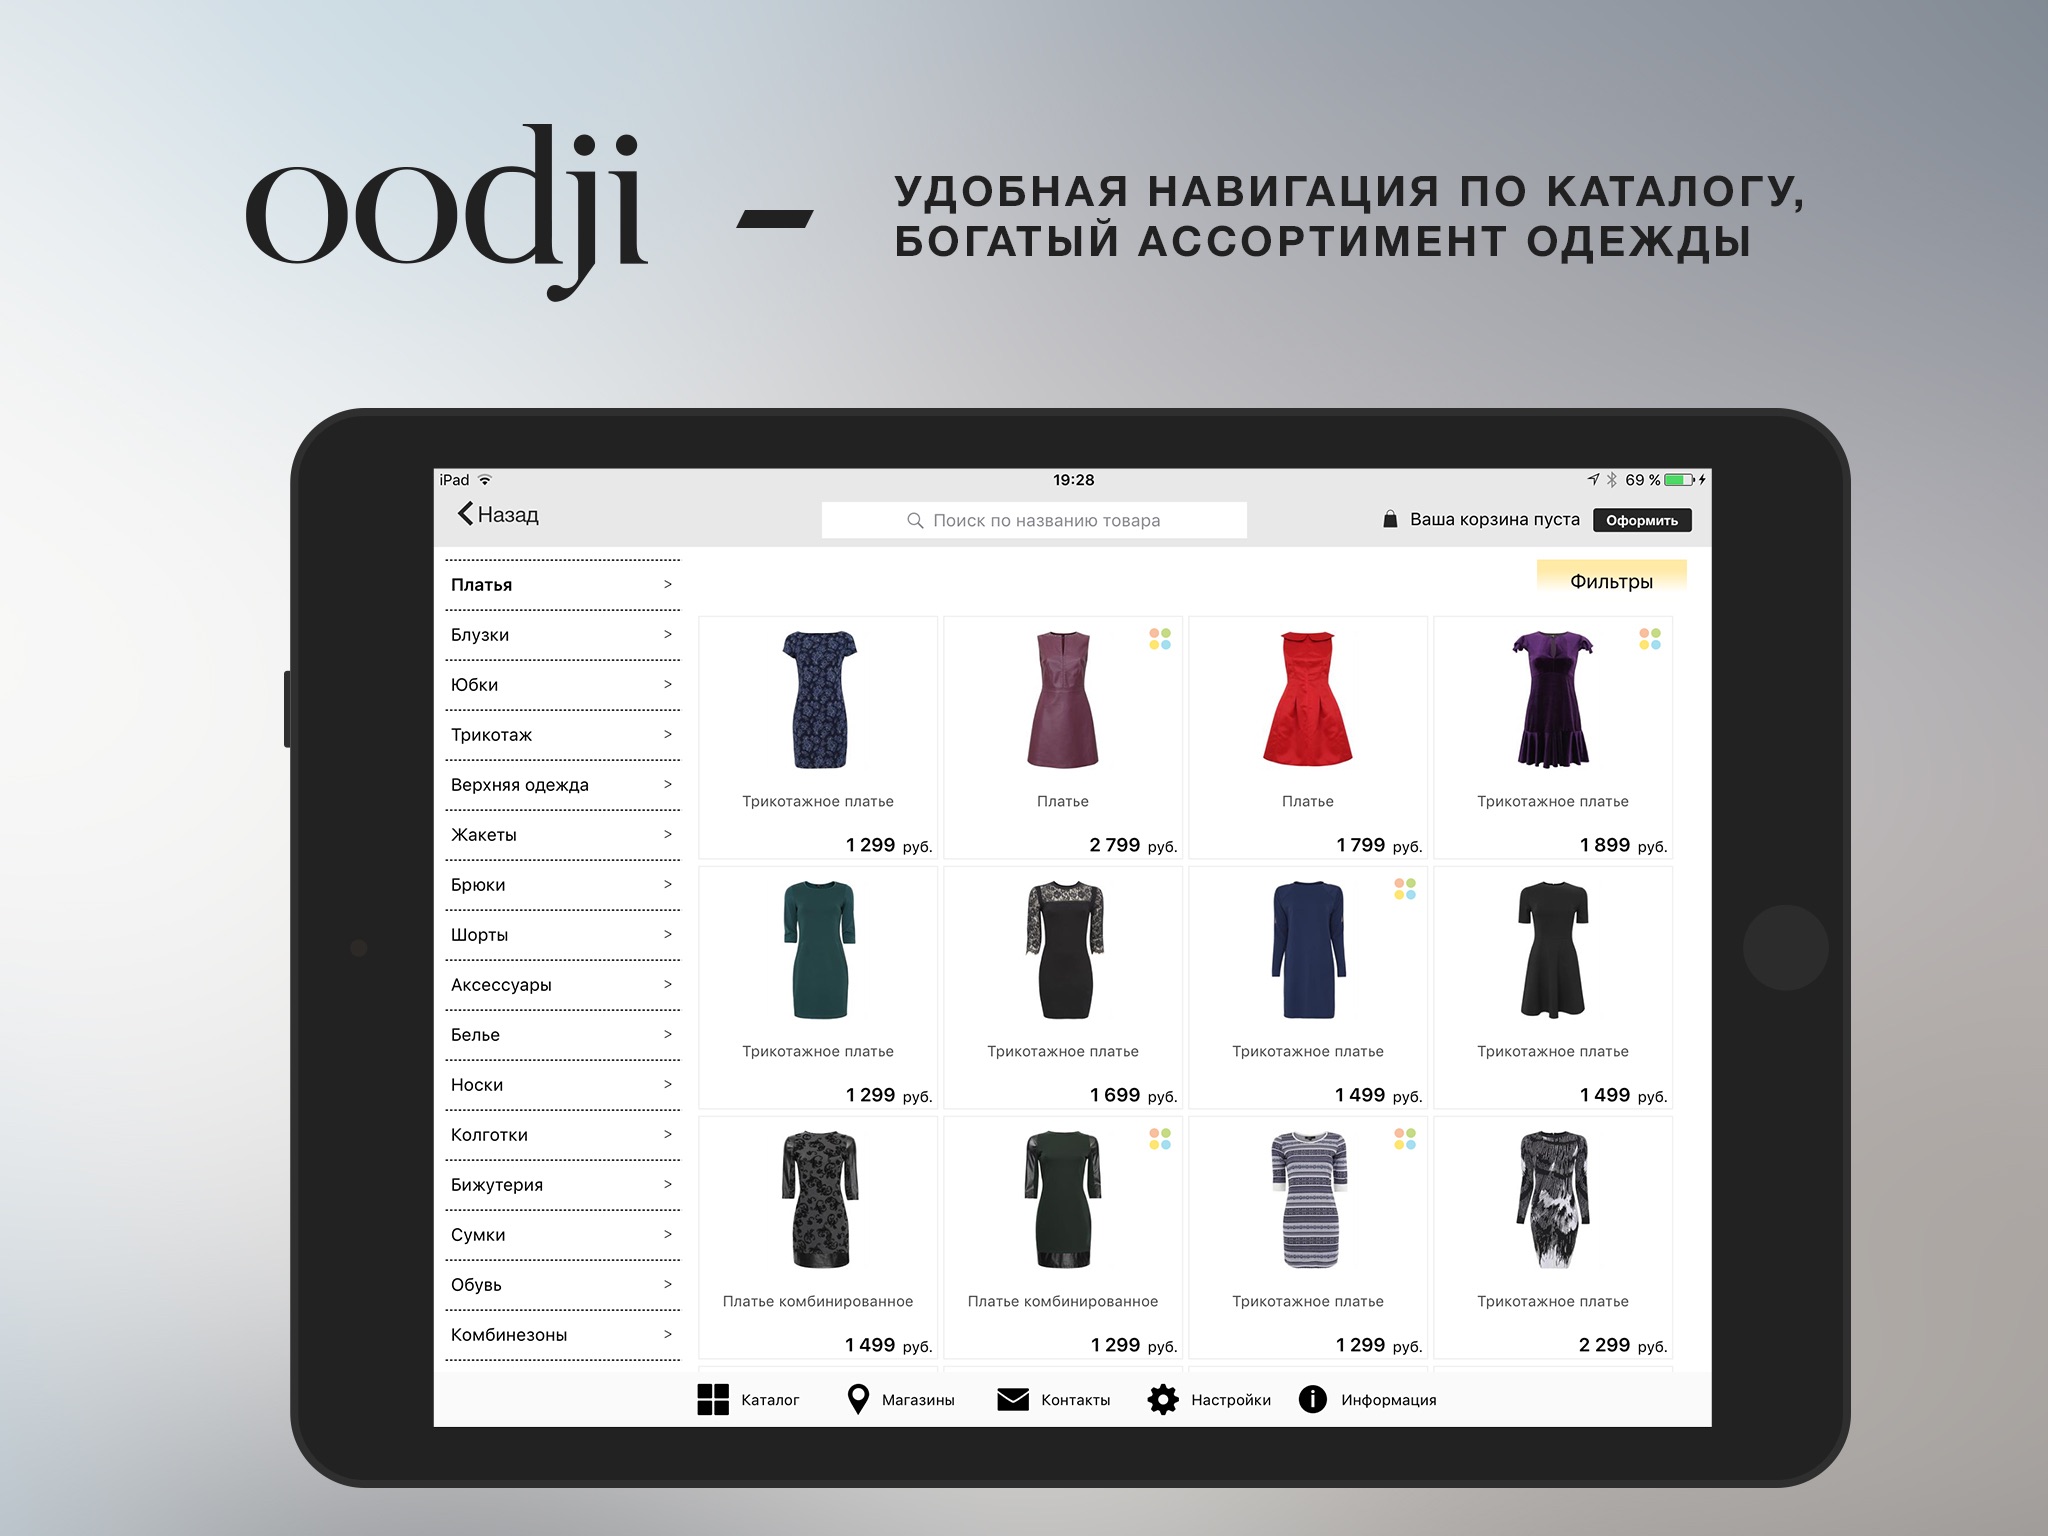 oodji HD - модная одежда. Сеть магазинов. screenshot 2